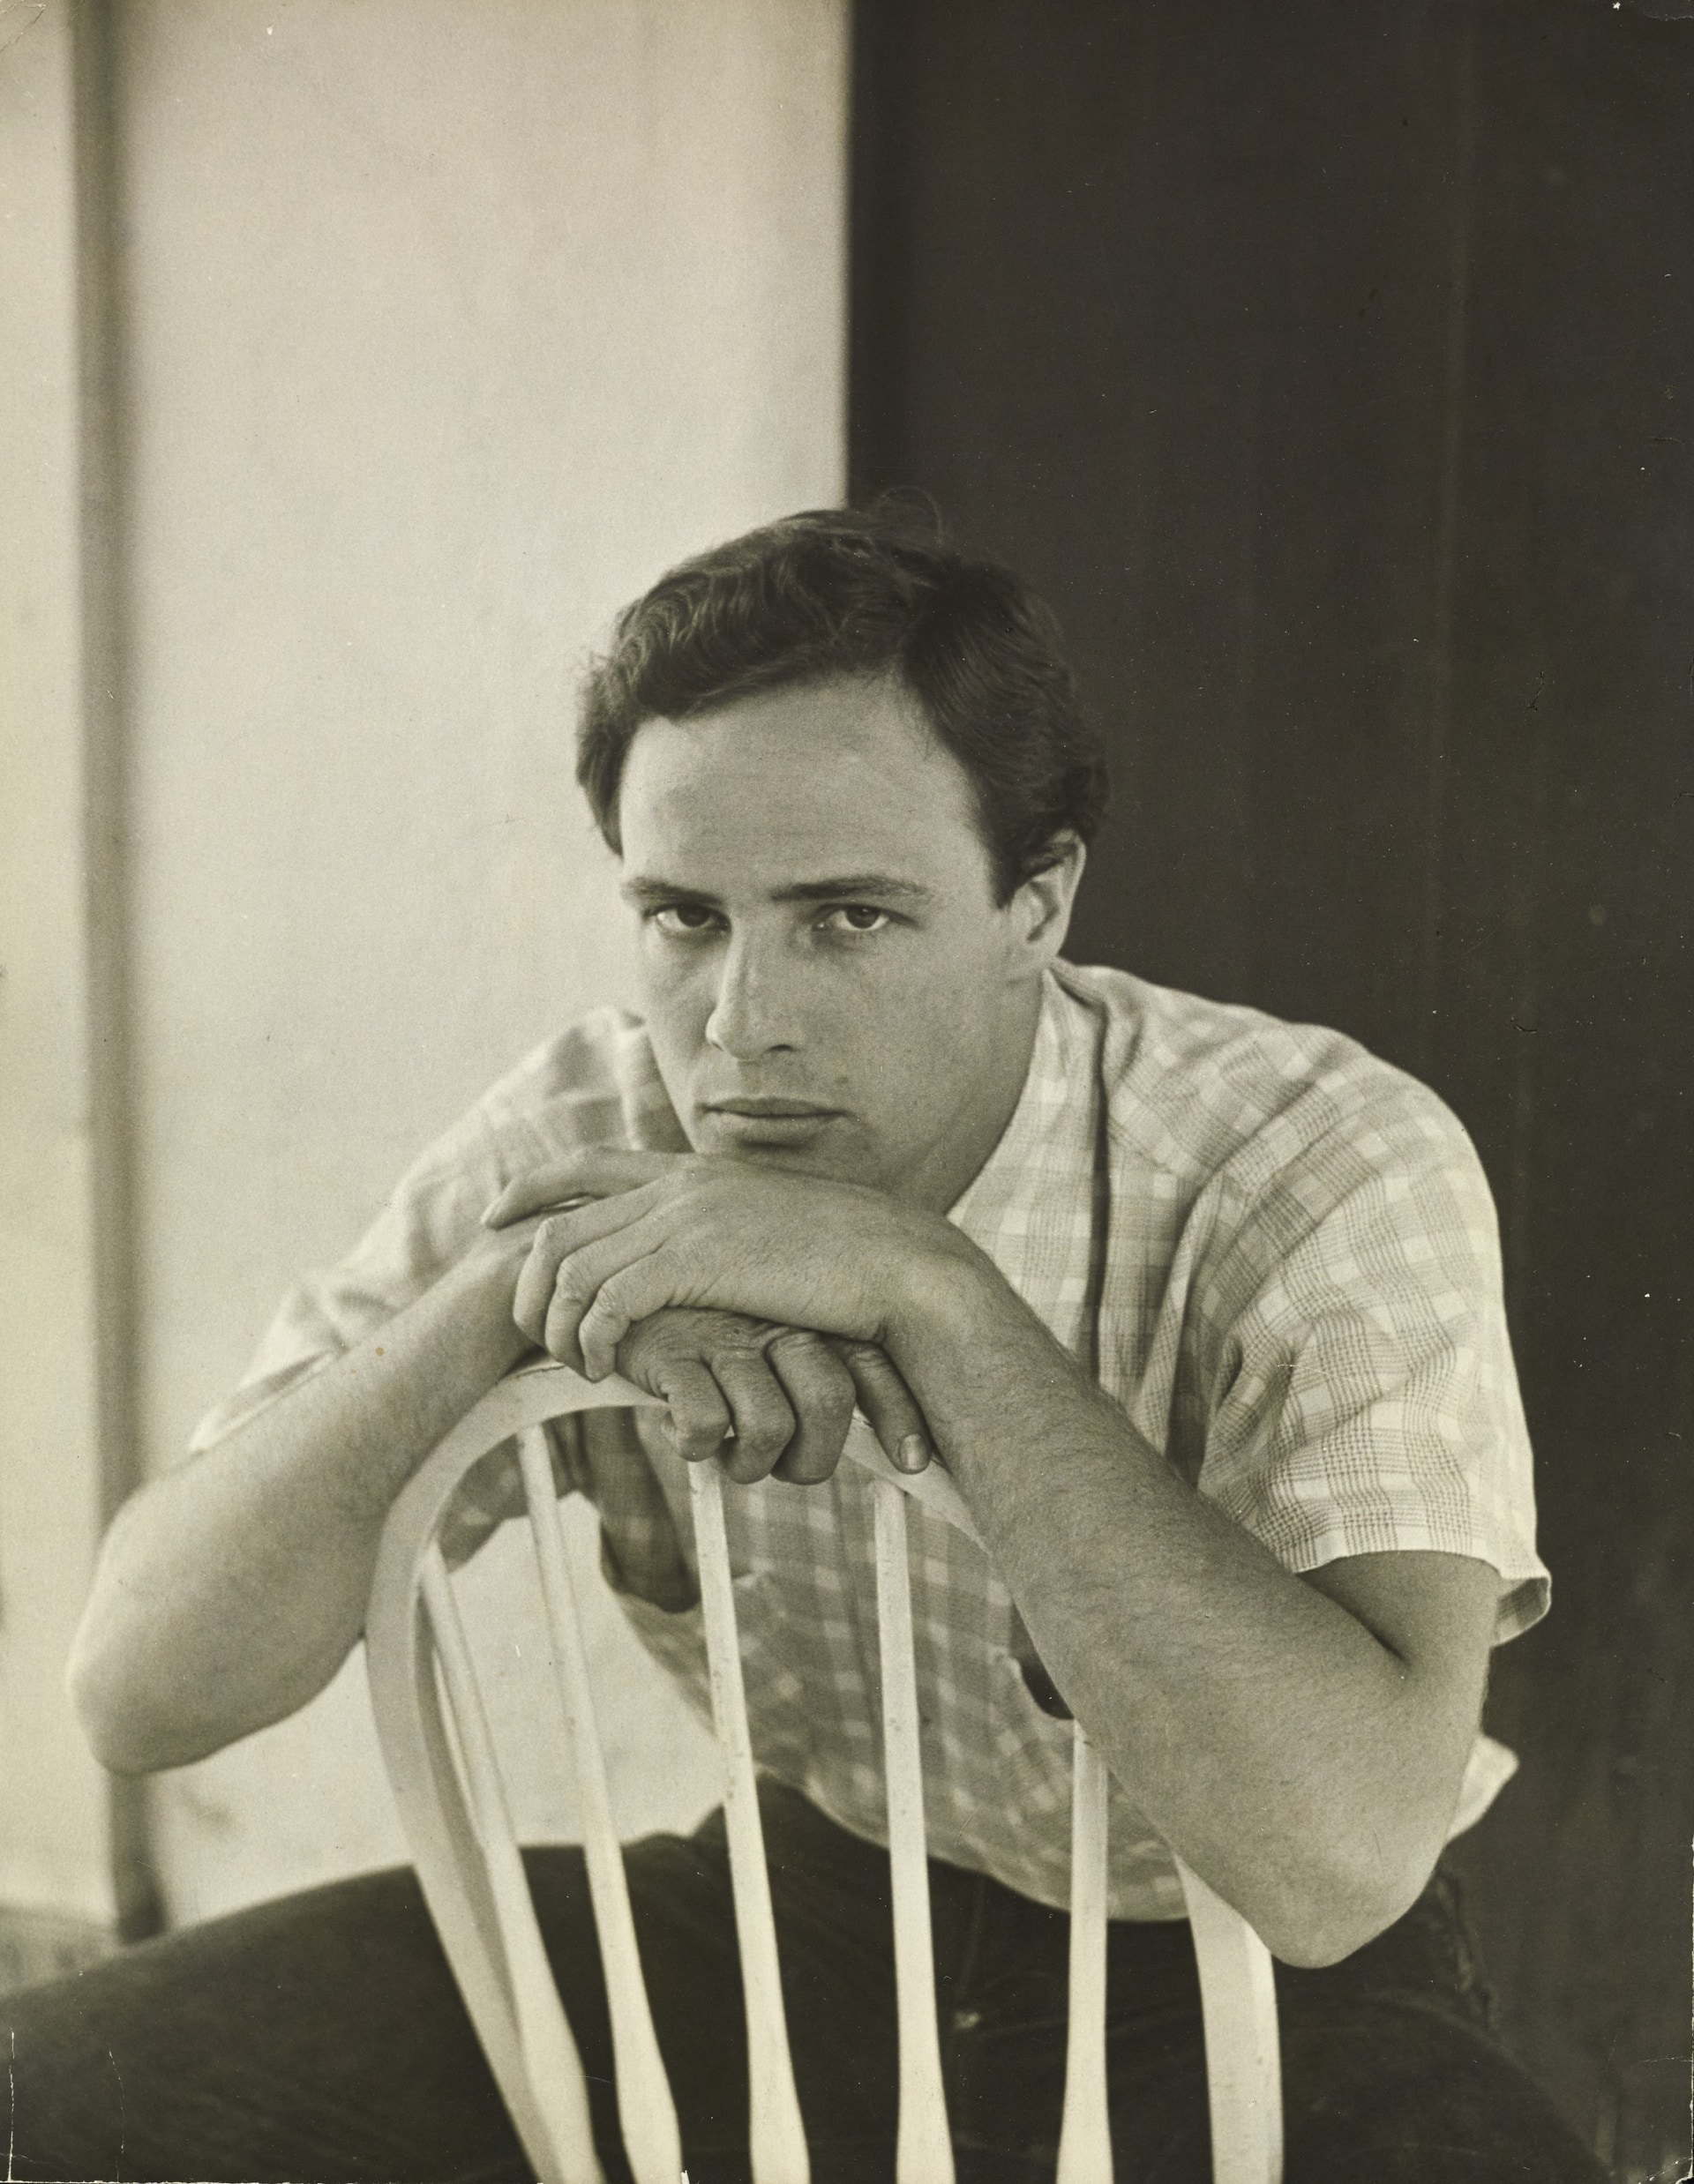 Jean Howard, L’attore Marlon Brando, 1951, Vogue © Condé Nast